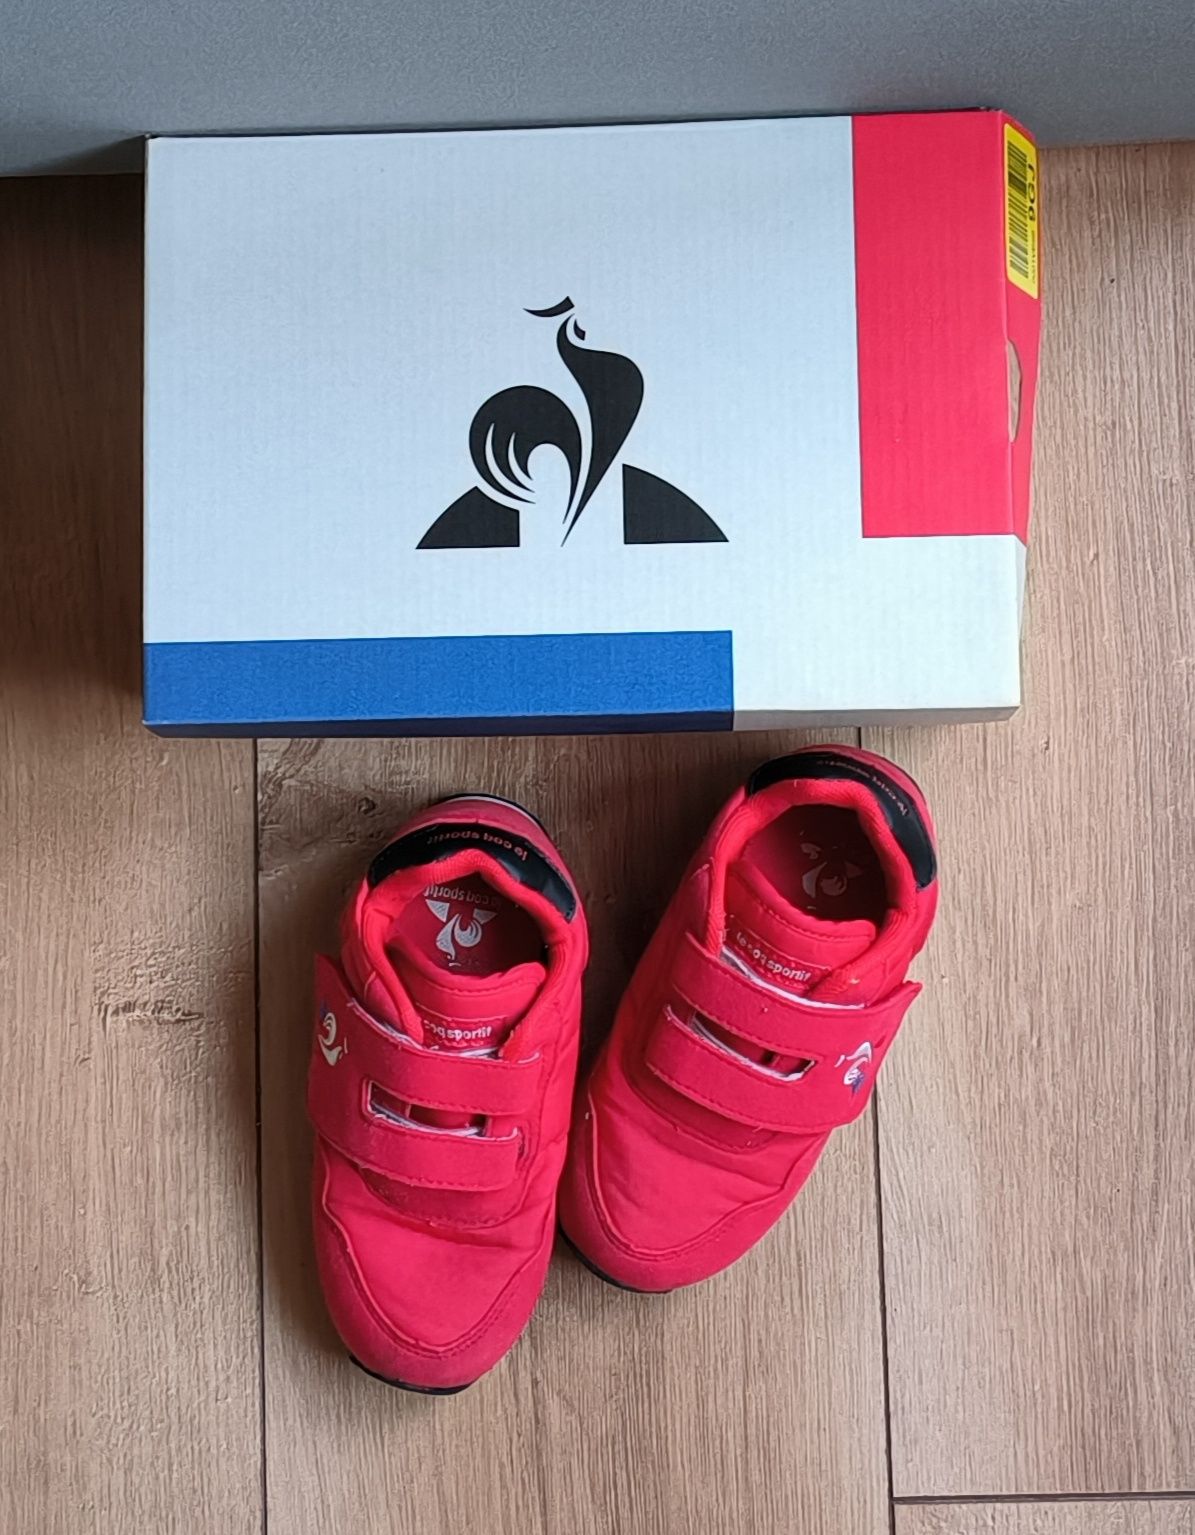 Le Coq Sportif czerwone buty obuwie sportowe na rzep r.27 17cm,stan bd